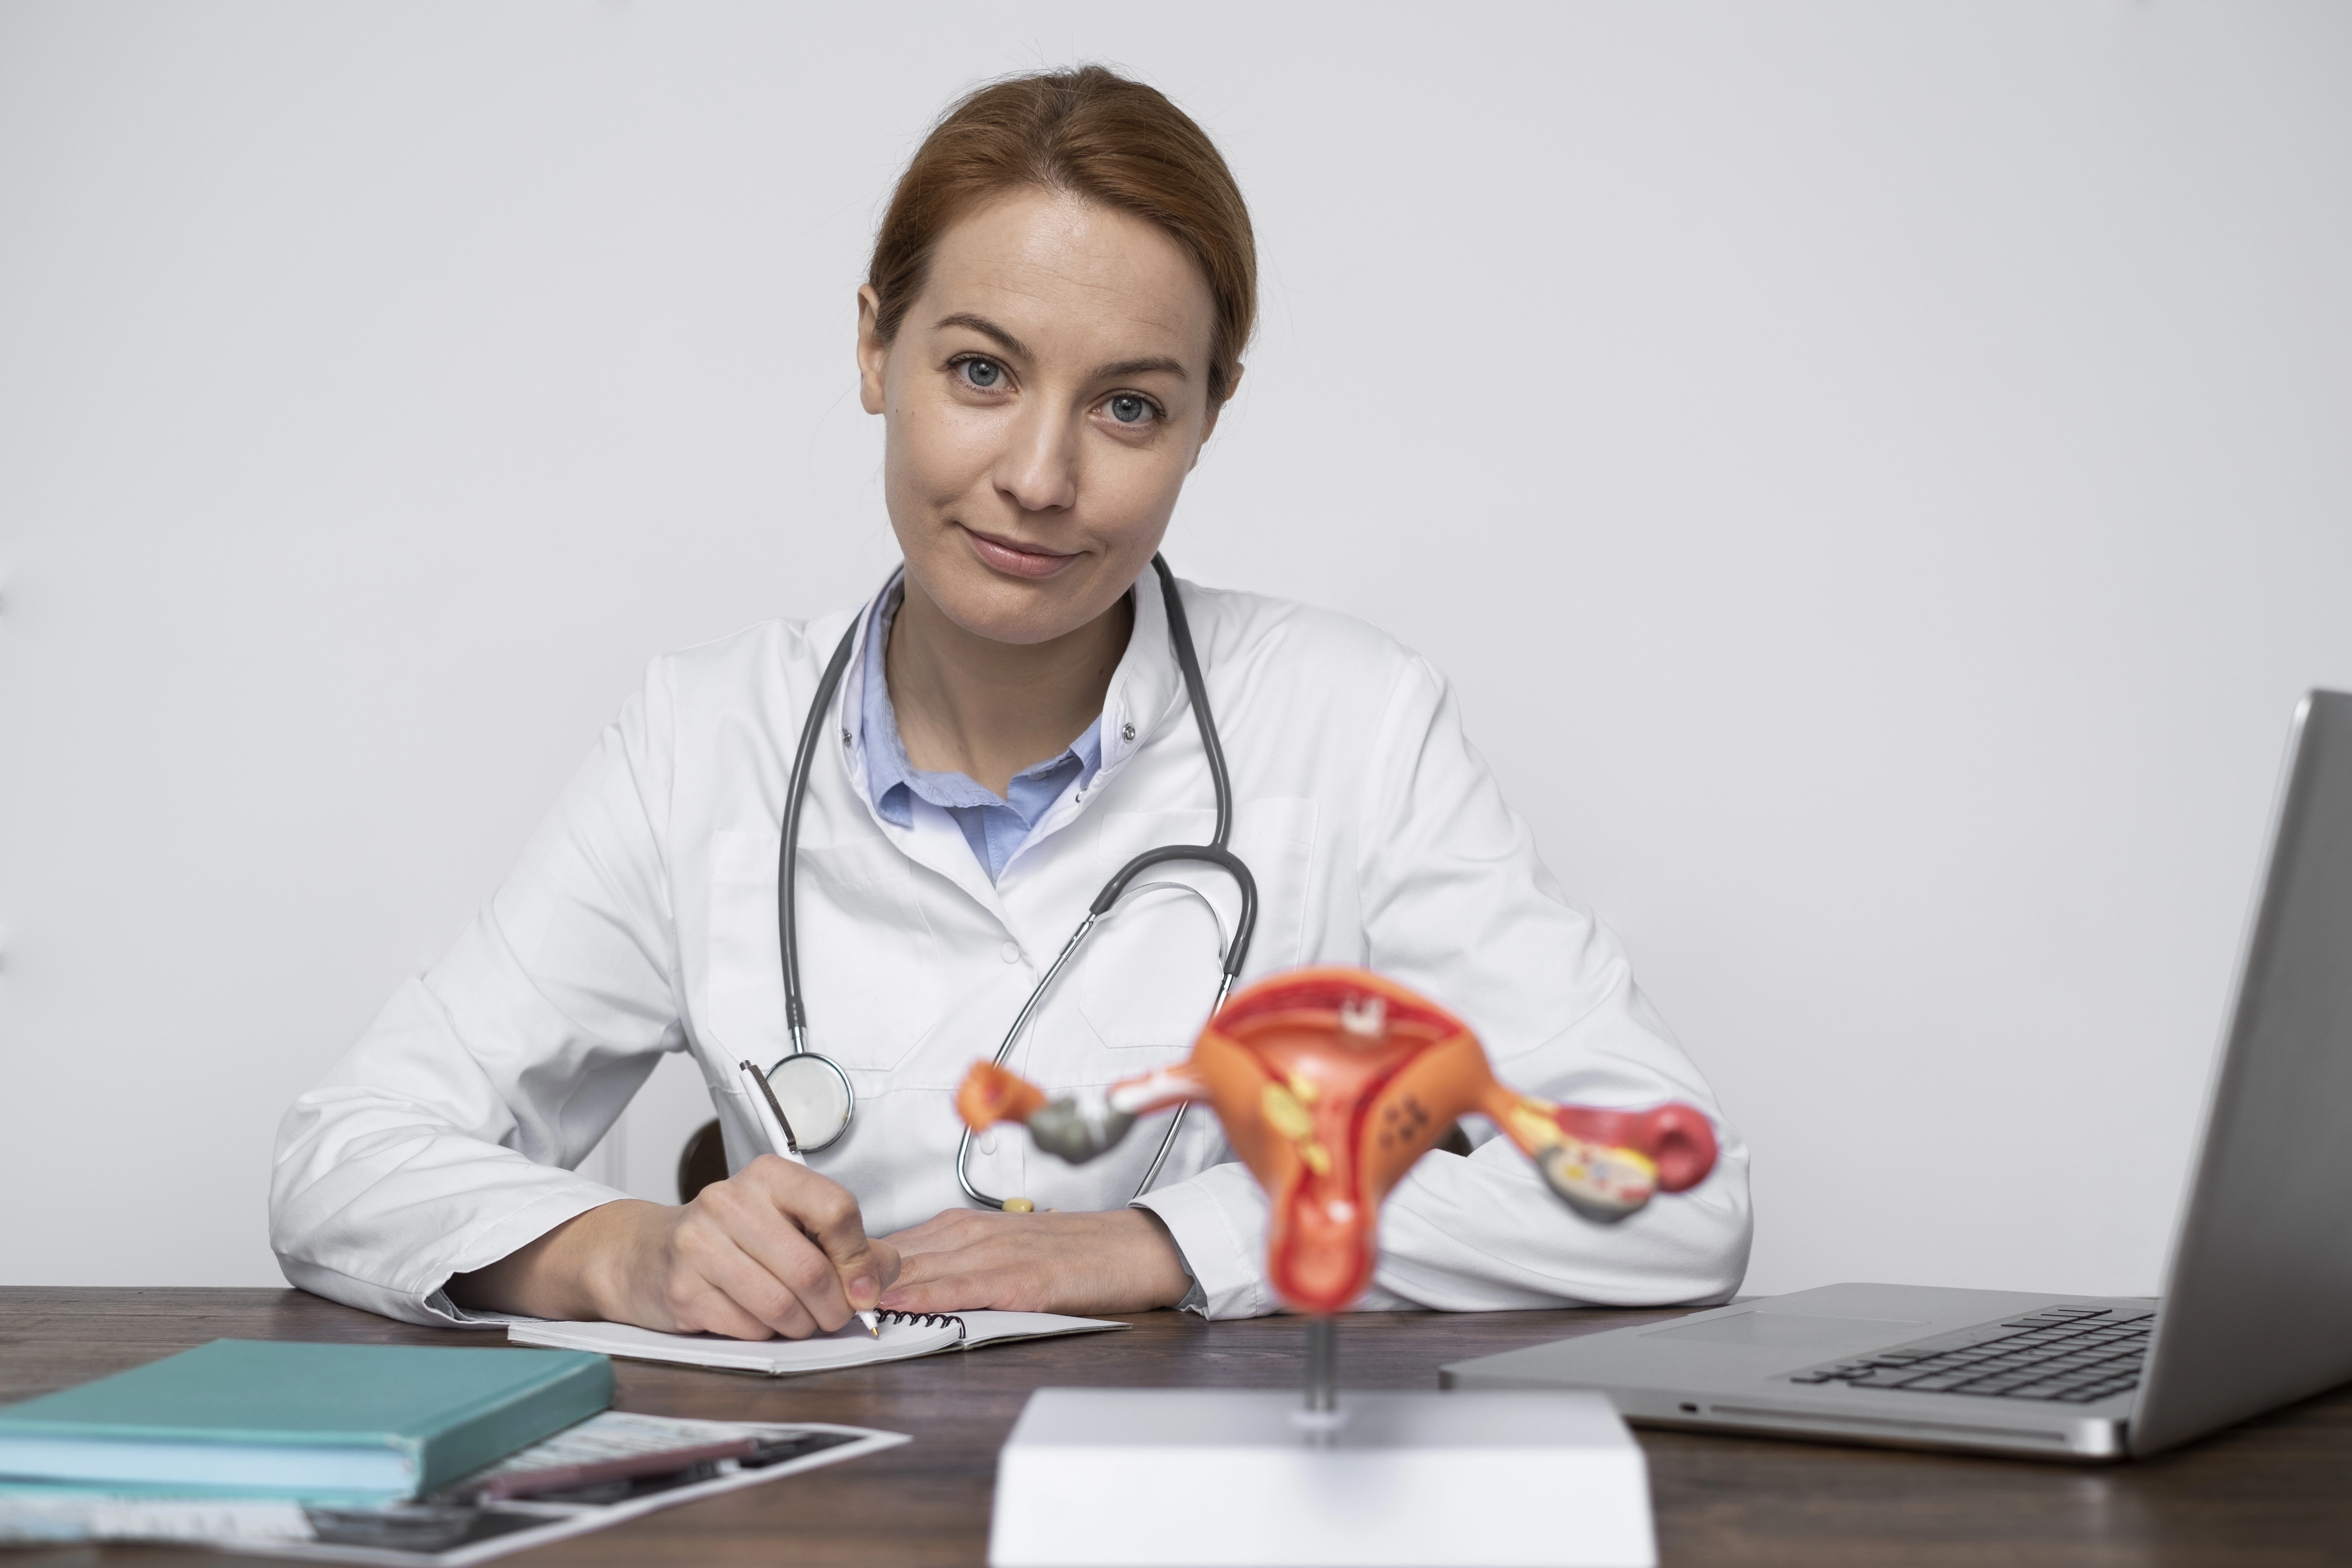 Atypická hyperplázia endometria: príznaky, príčiny a metódy liečby